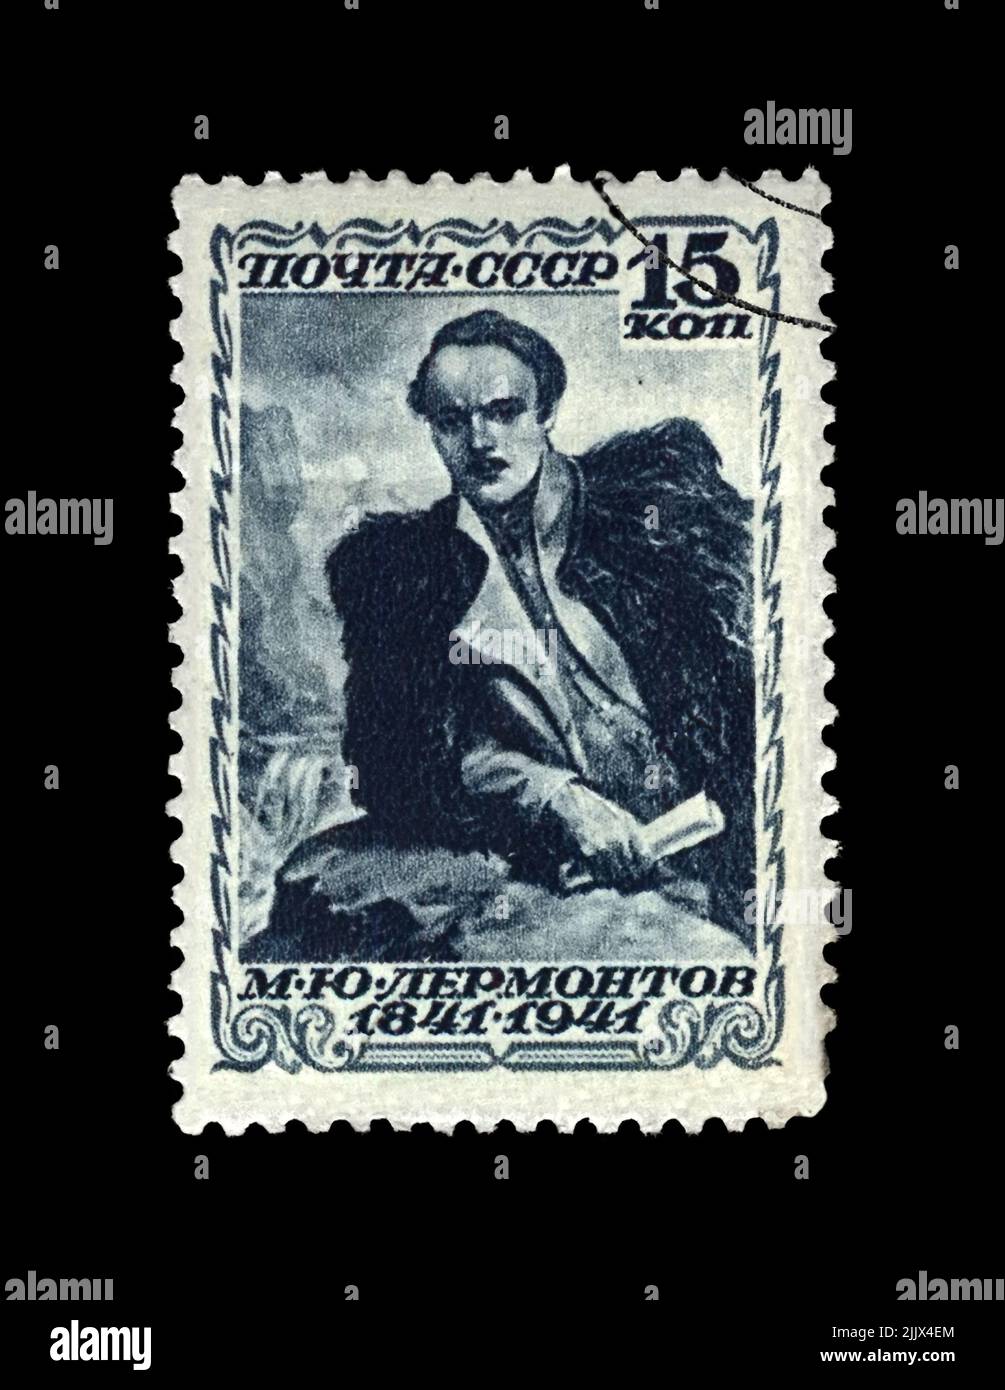 Michail Lermontov, berühmter russischer Dichter, Verse-Schriftsteller, um 1941. Abgestempelter Poststempel, der in der UdSSR auf schwarzem Hintergrund isoliert gedruckt wurde. Stockfoto